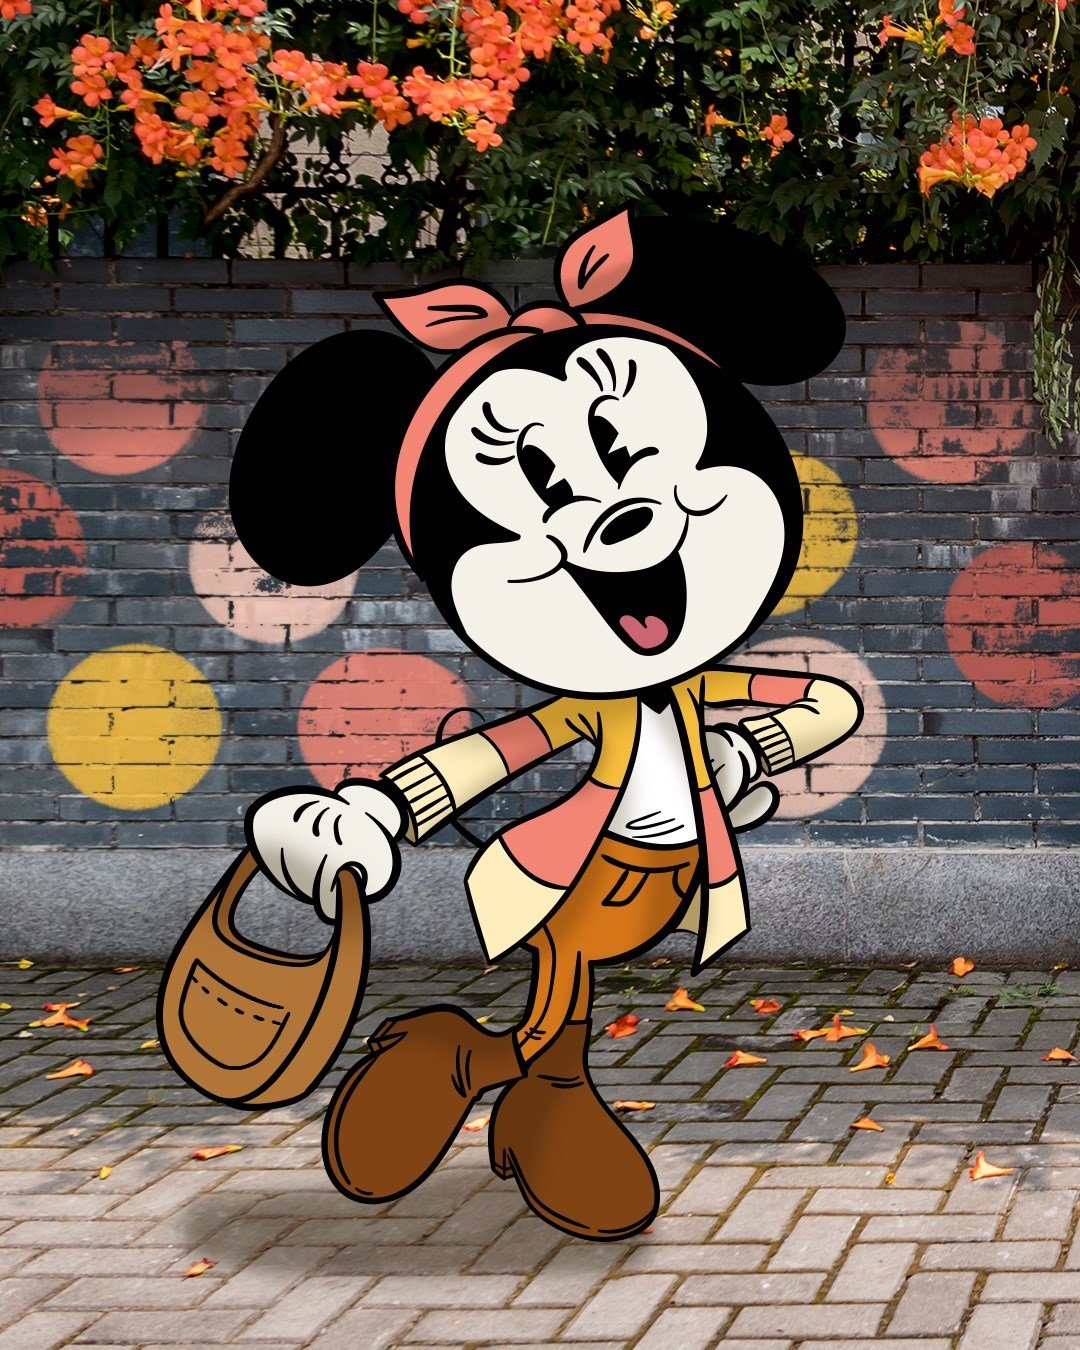 Por primera vez, Minnie Mouse va a usar pantalones